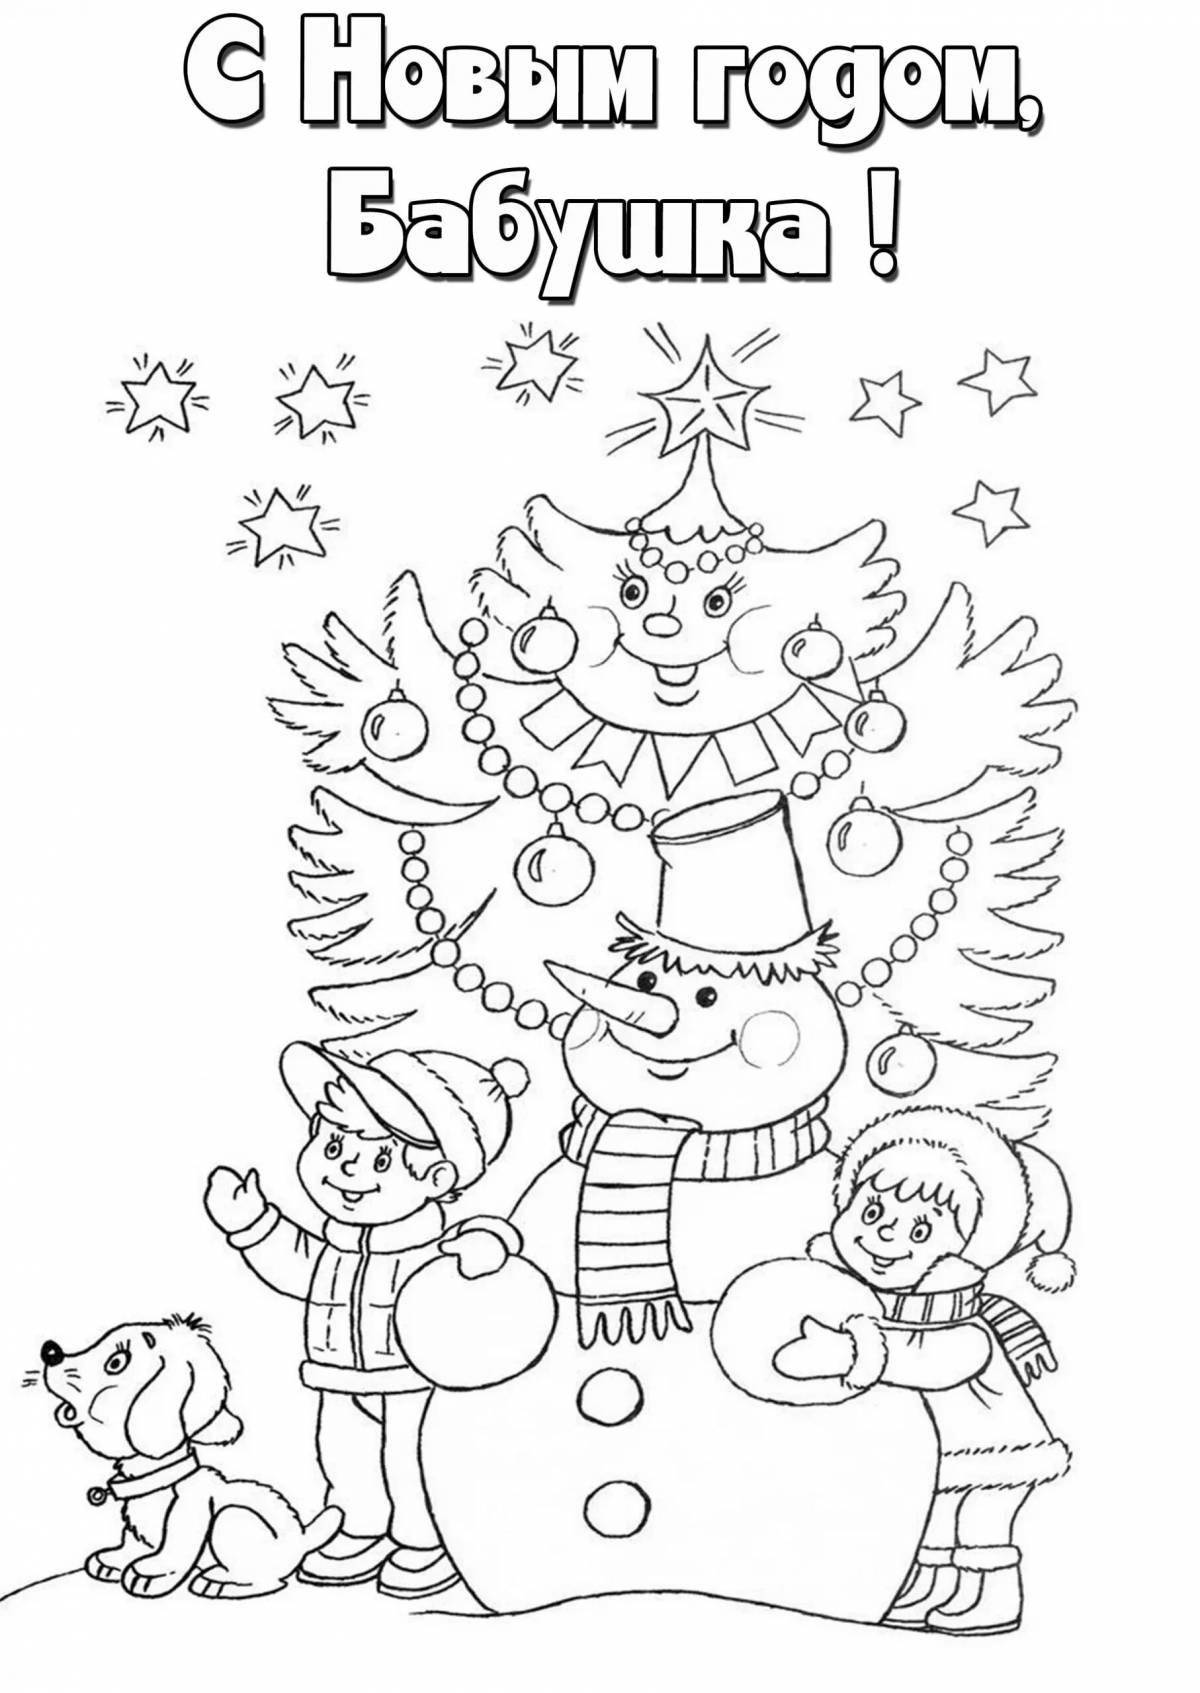 Christmas card for kids #2